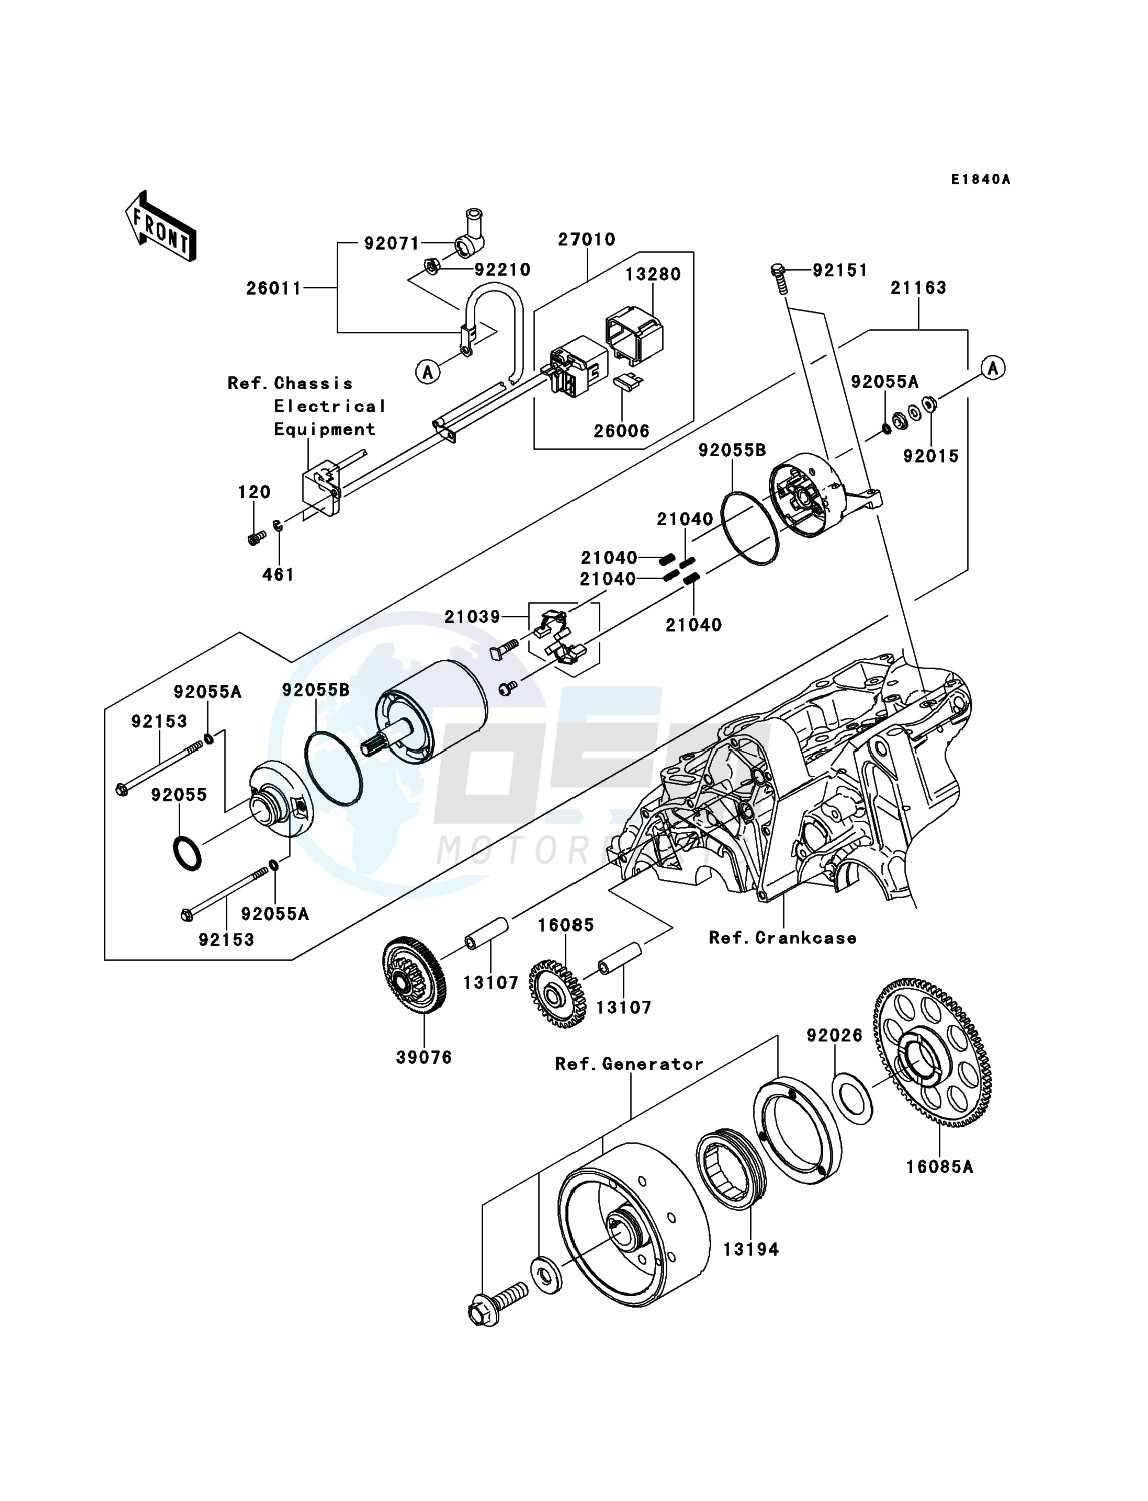 Starter Motor(ER650AE046805-) blueprint